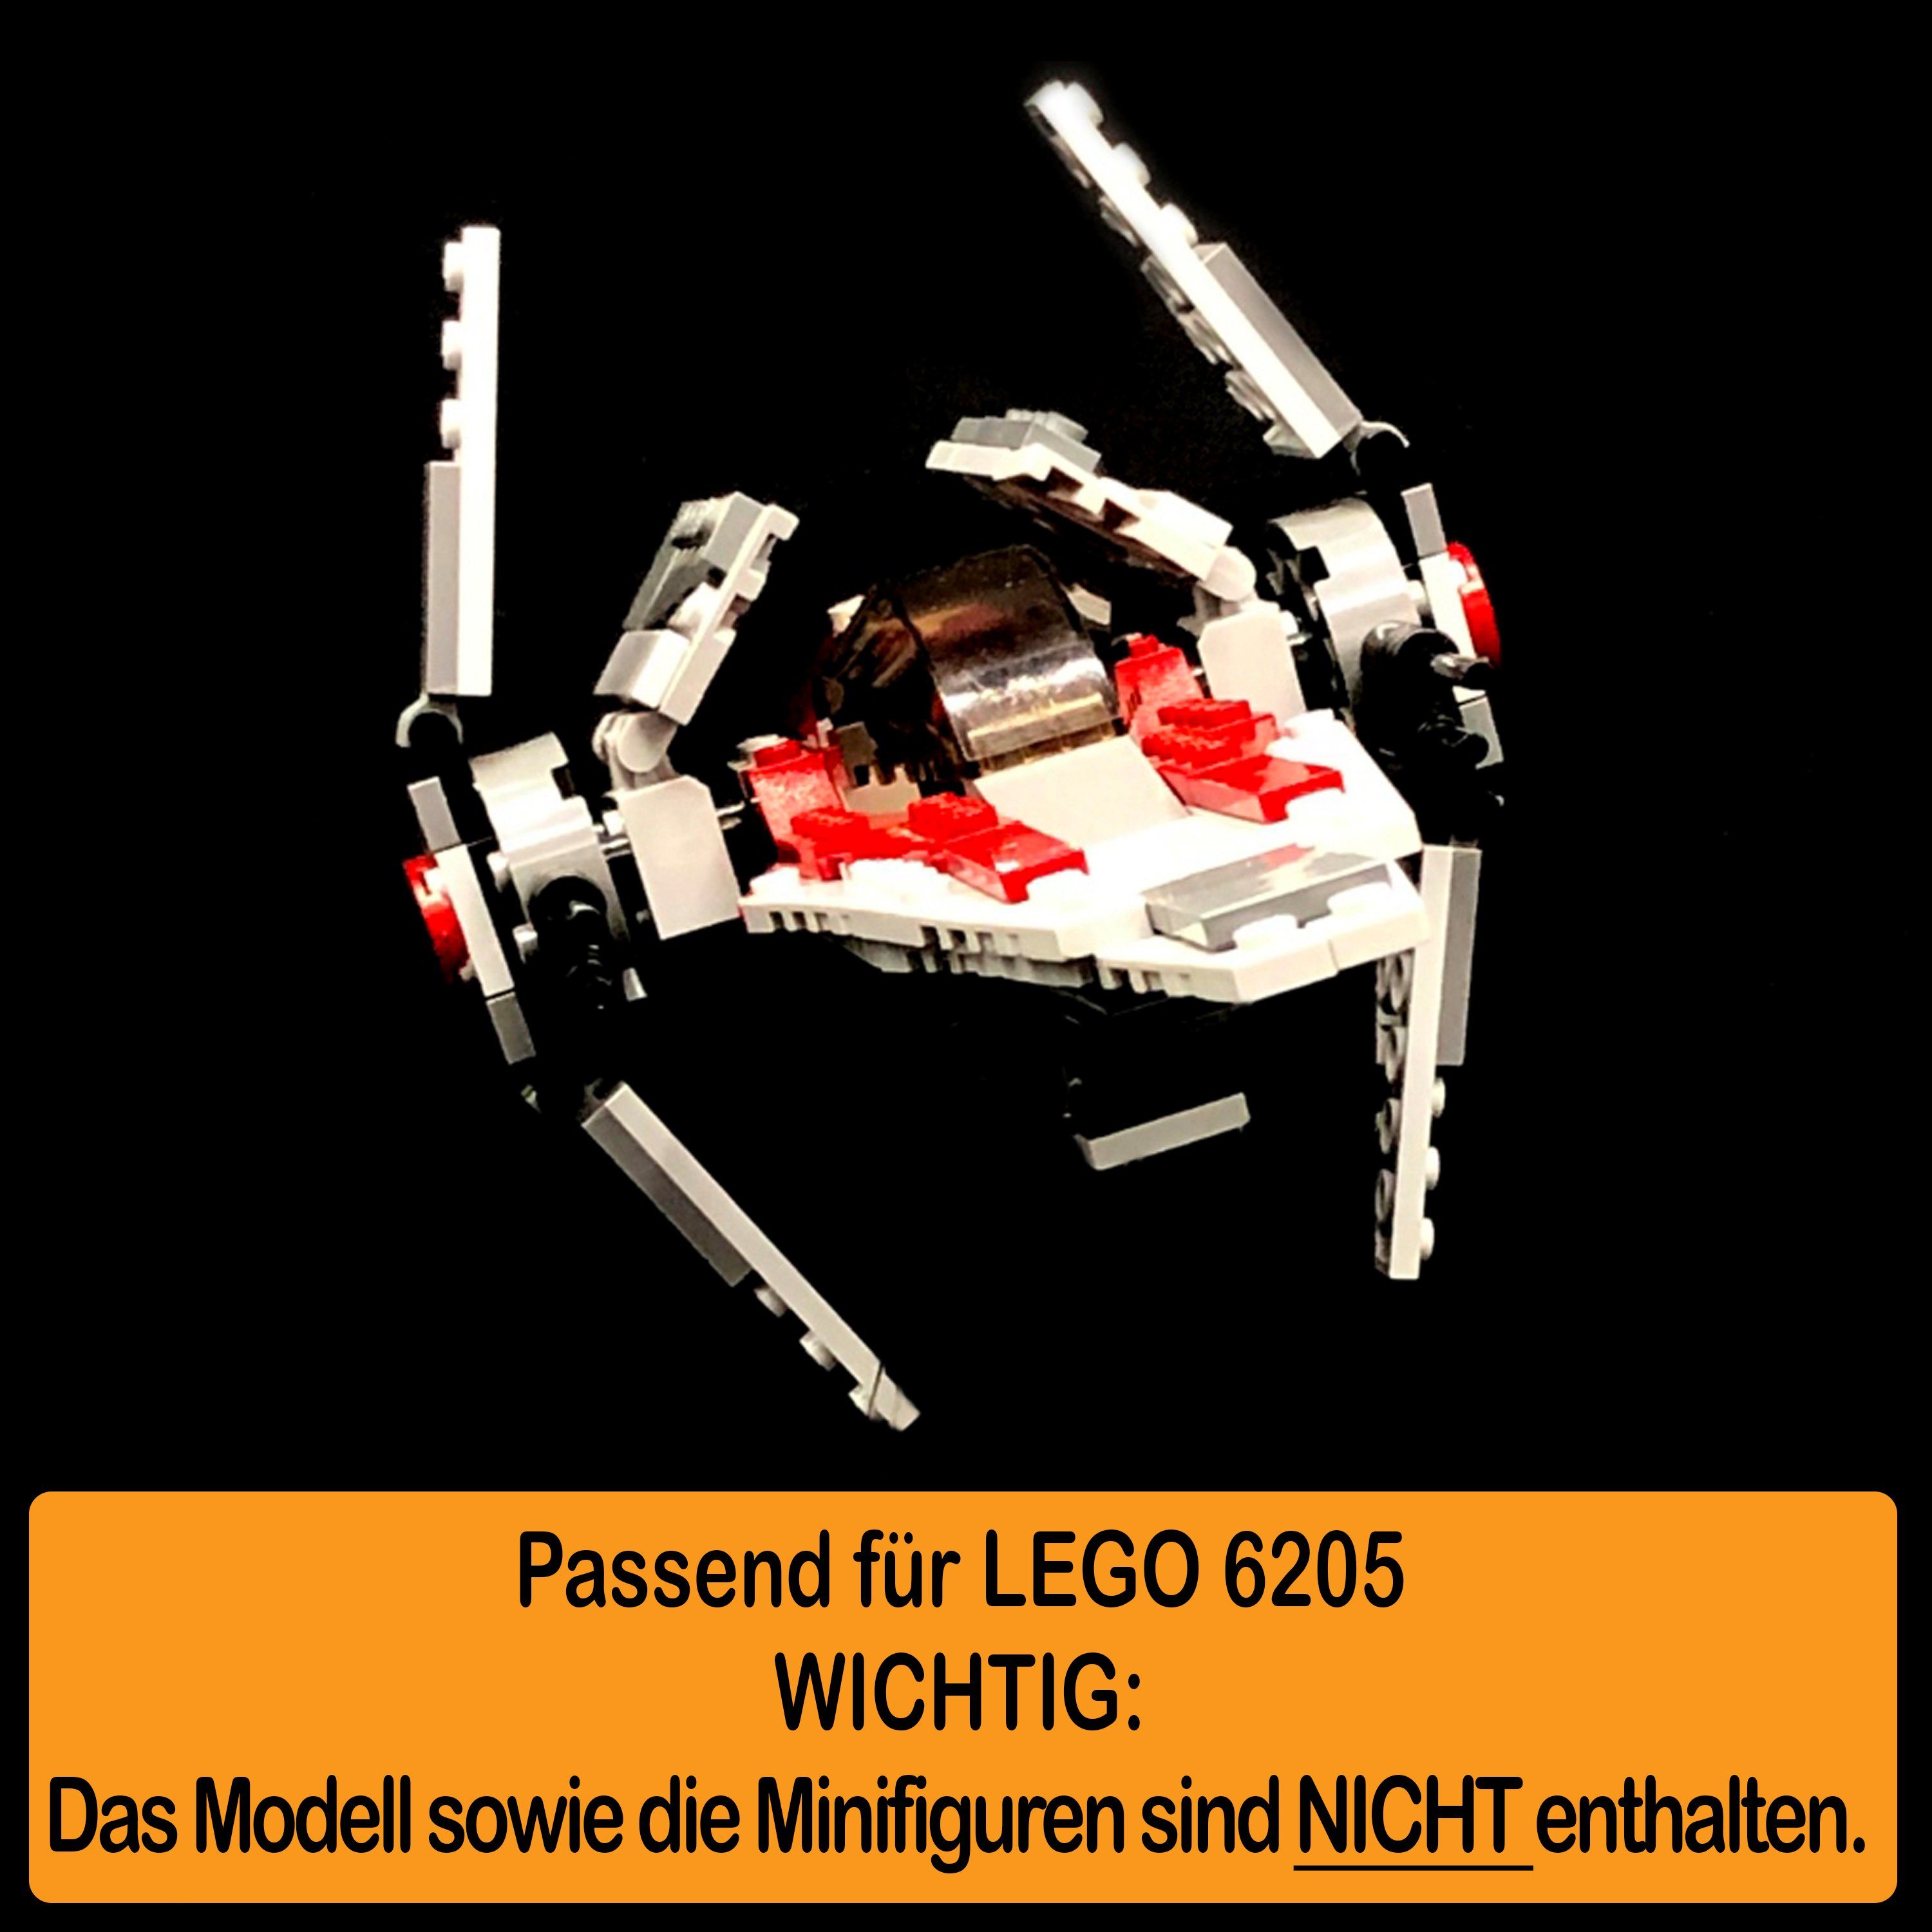 Germany in 100% zusammenbauen), 6207 und (verschiedene Positionen Standfuß AREA17 zum Stand A-Wing für Fighter Display Winkel selbst einstellbar, Acryl Made LEGO